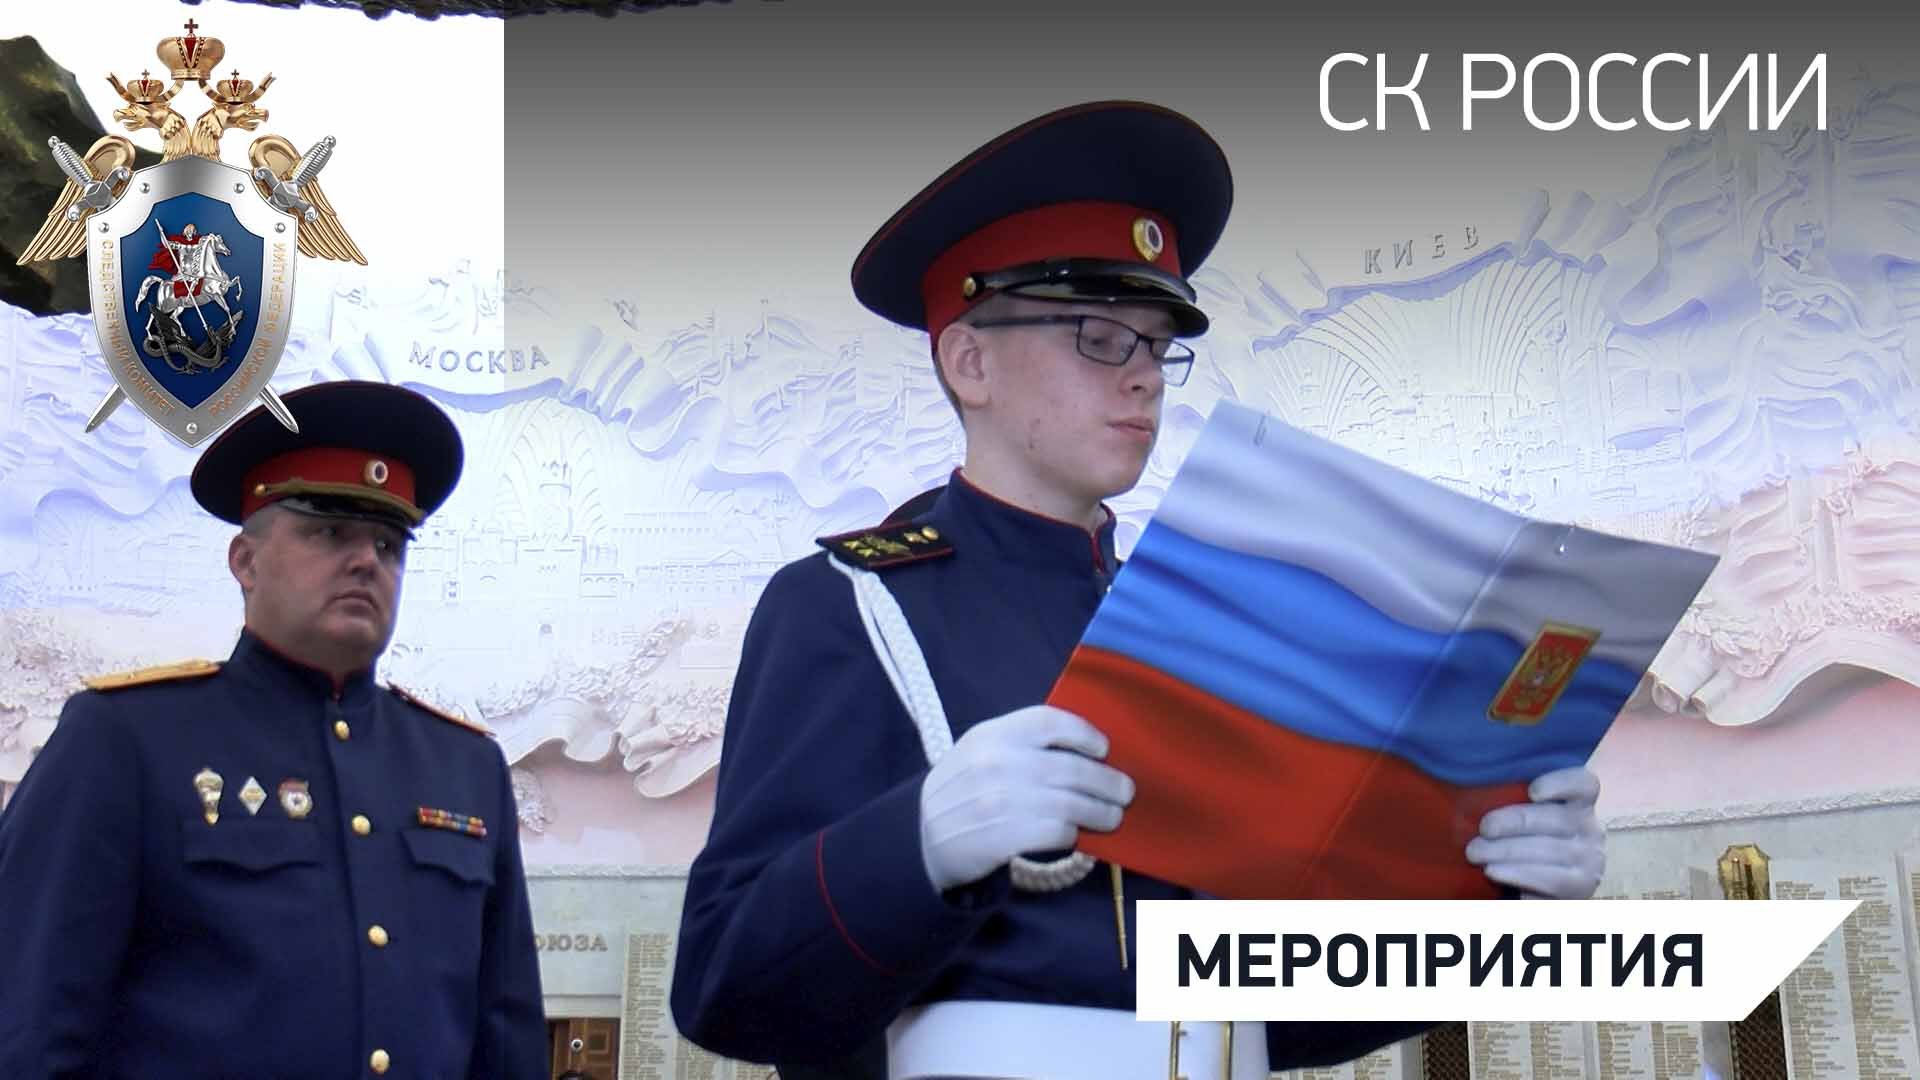 Воспитанники Кадетского корпуса СКР имени Александра Невского приняли Торжественную клятву кадета